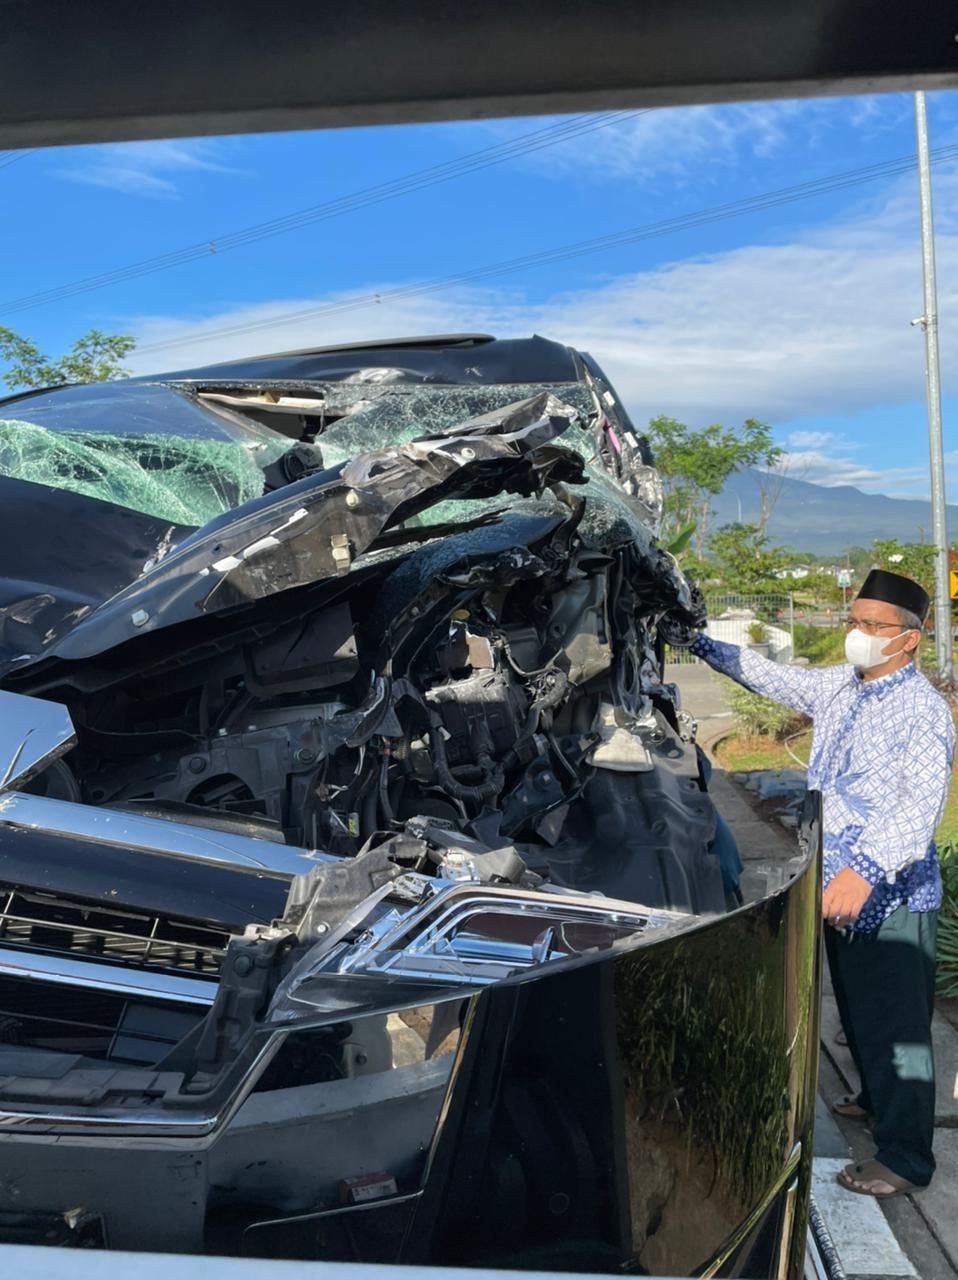 Ketua MUI Kiai Mifta Kecelakaan di Salatiga, Dirujuk ke RSI Jemursari